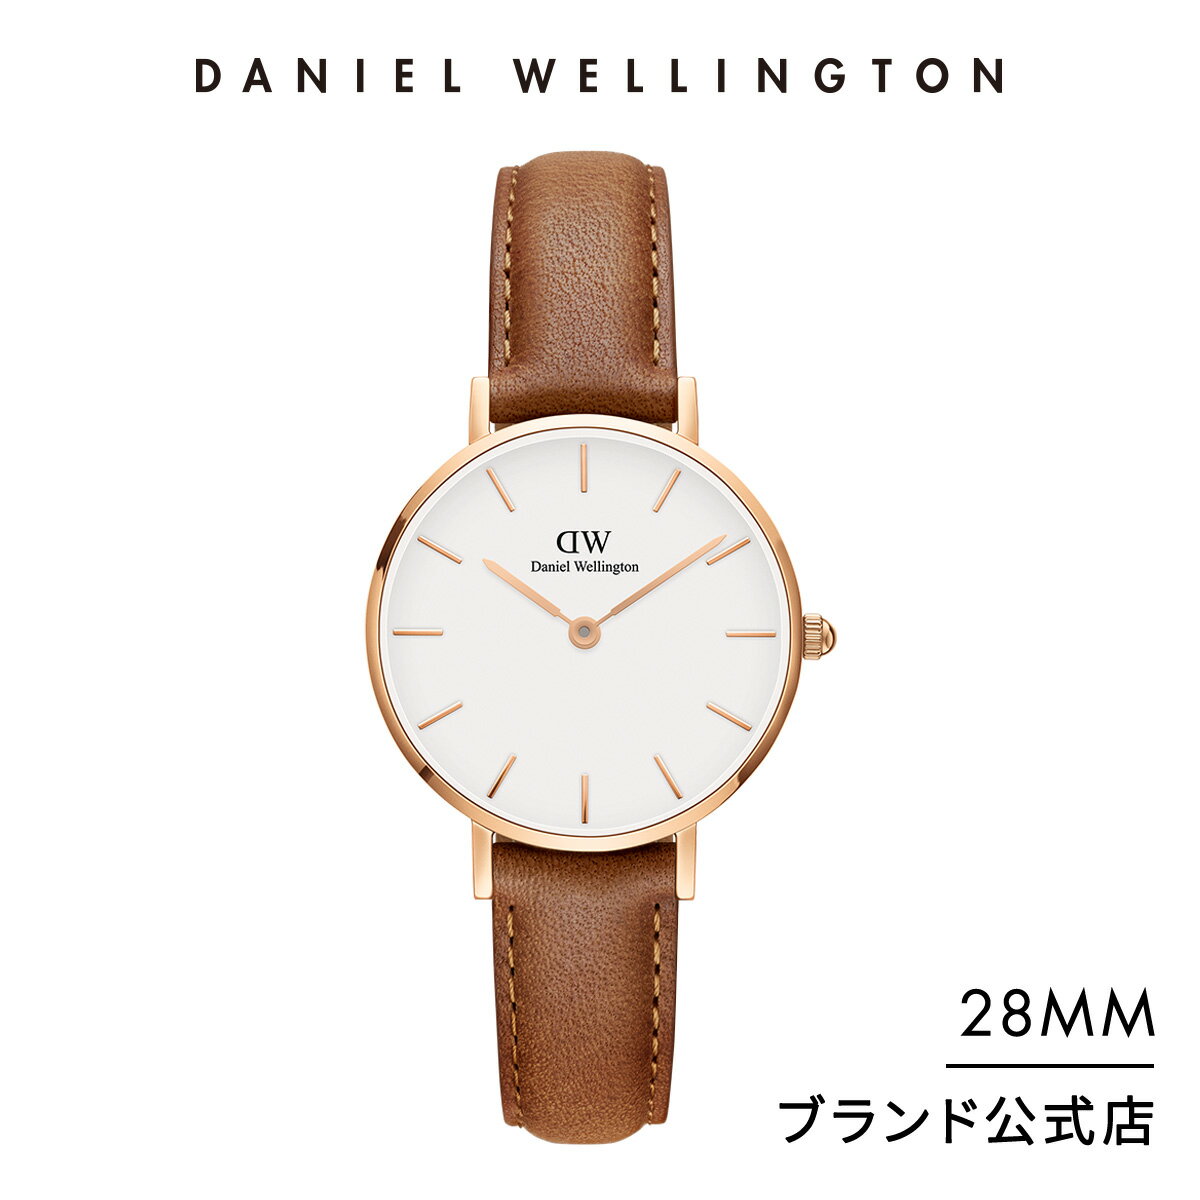 新社会人に人気のレディース腕時計ブランドランキングtop10 21年最新版 ベストプレゼントガイド